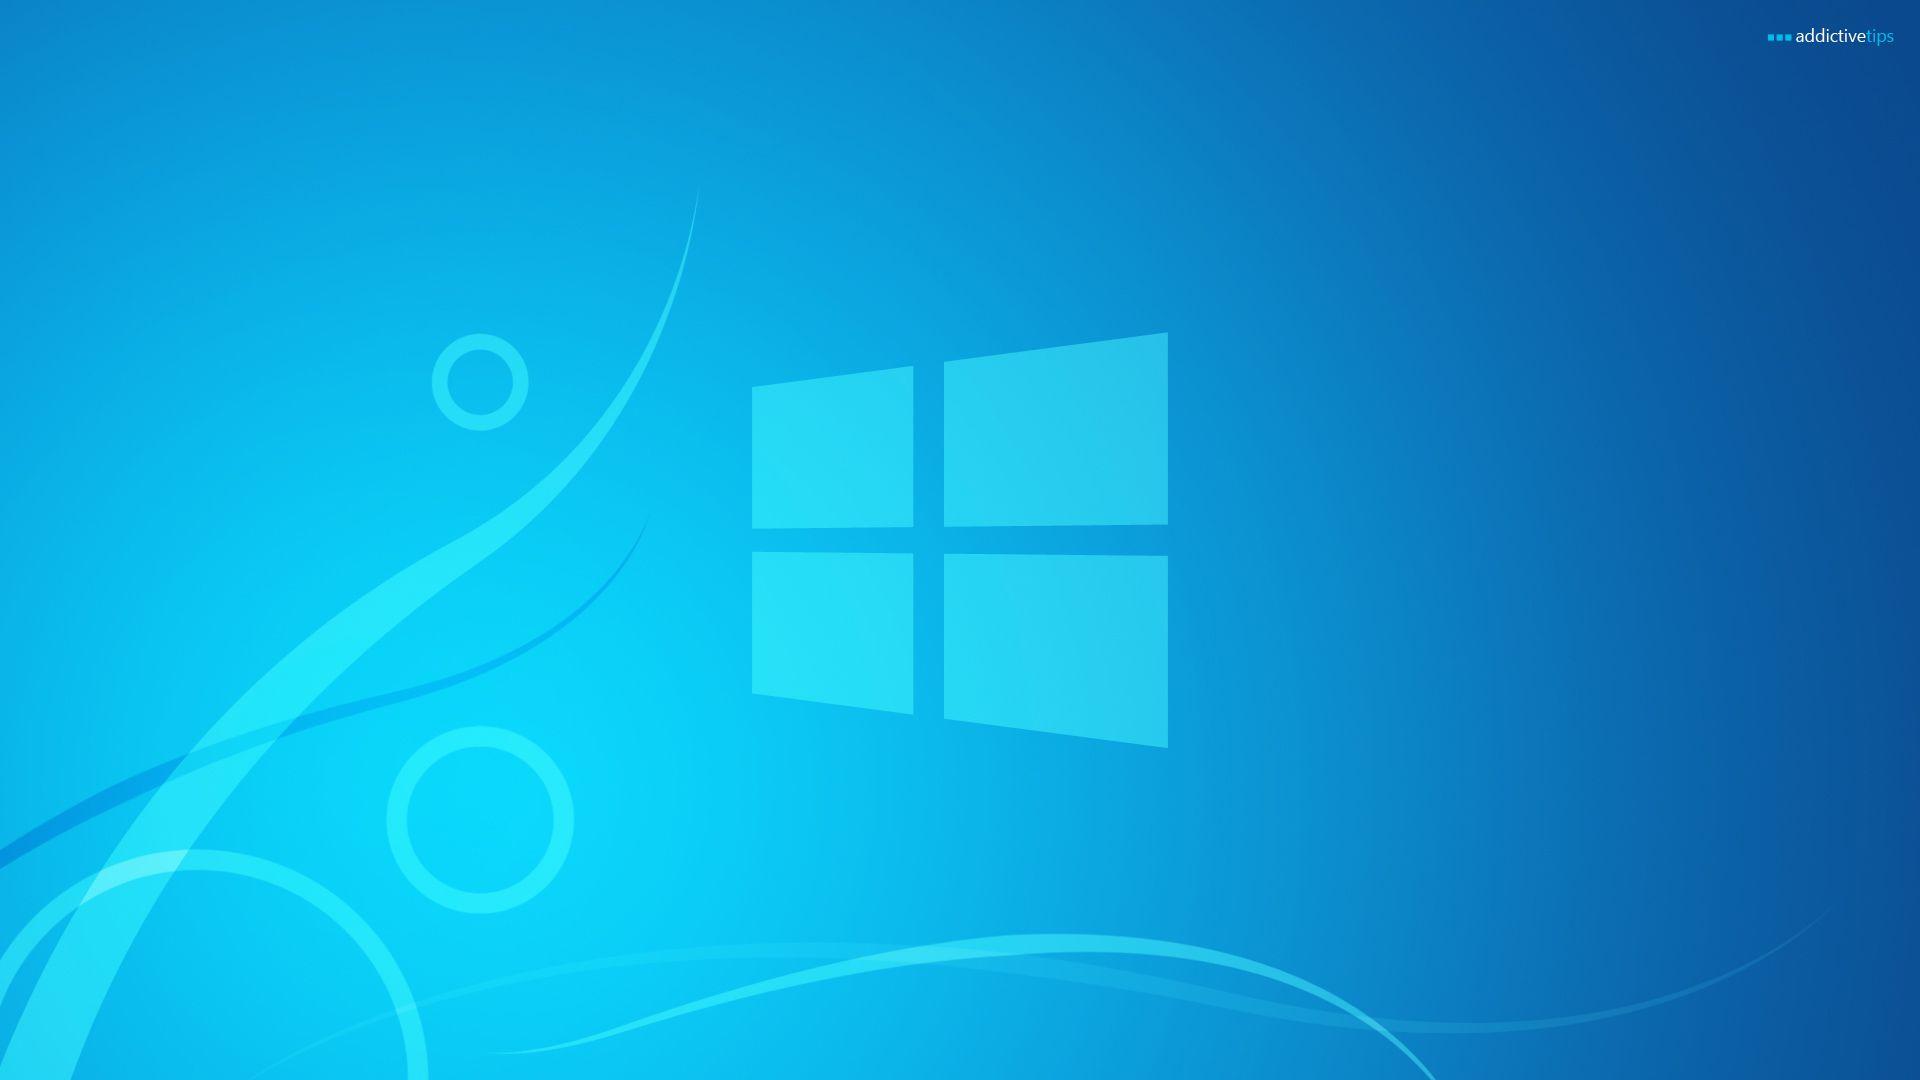 Windows 8 Official Logo - Windows 8 Official #6926703